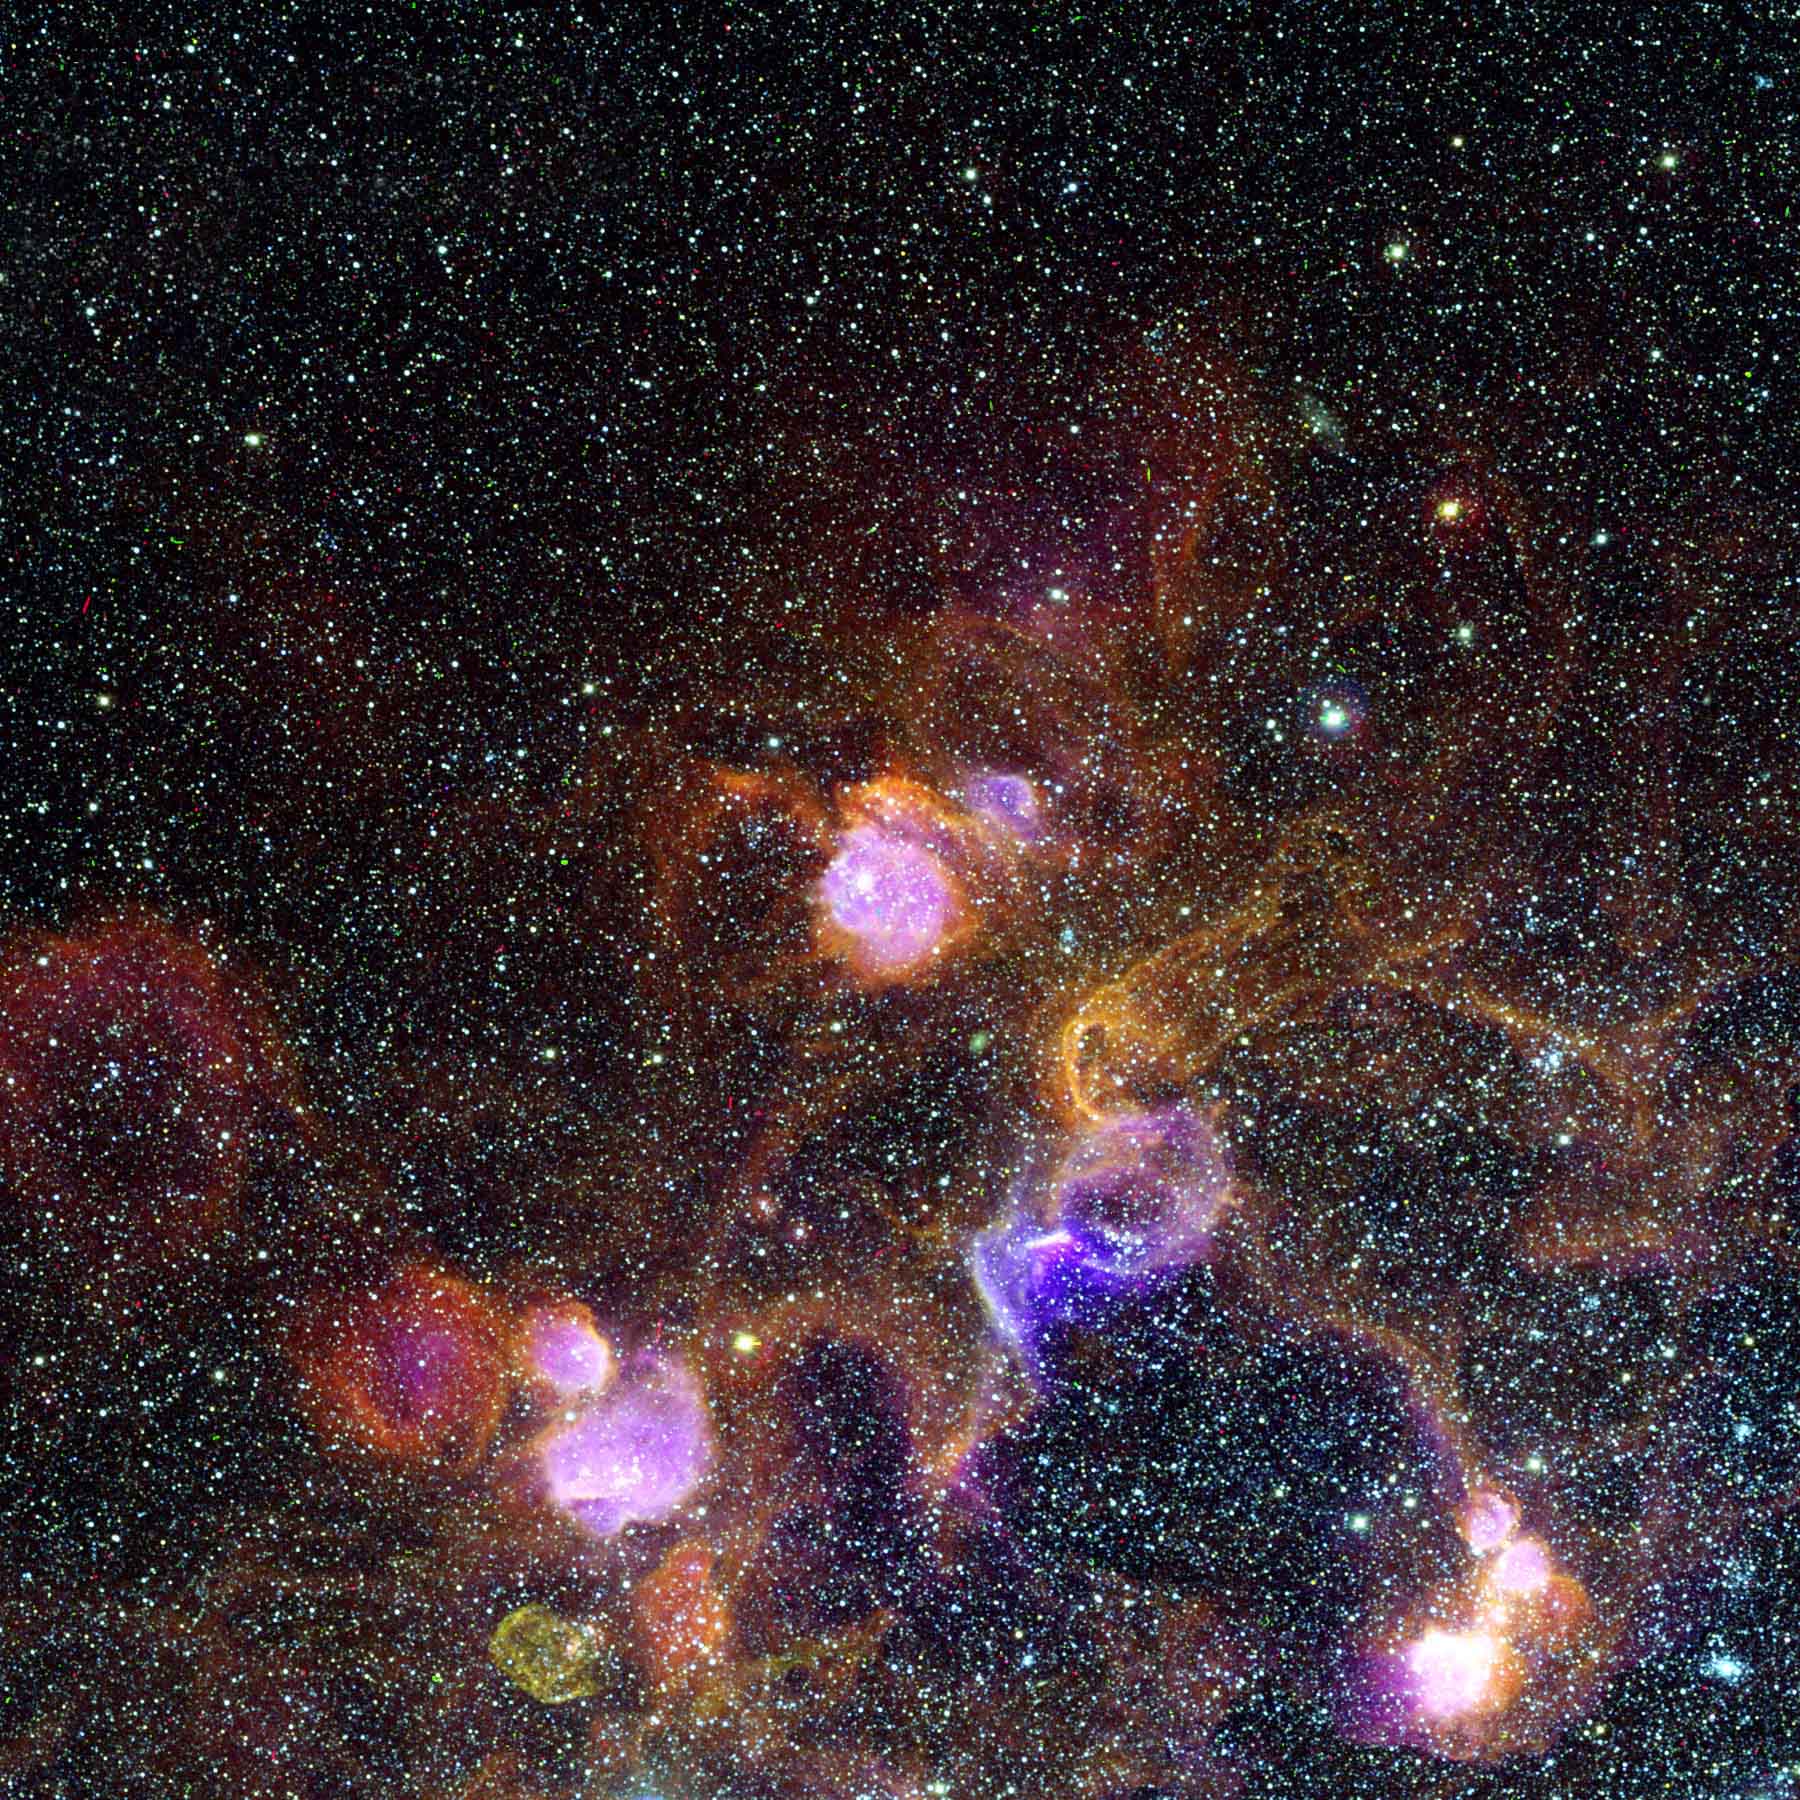 НАСА снимки звезд